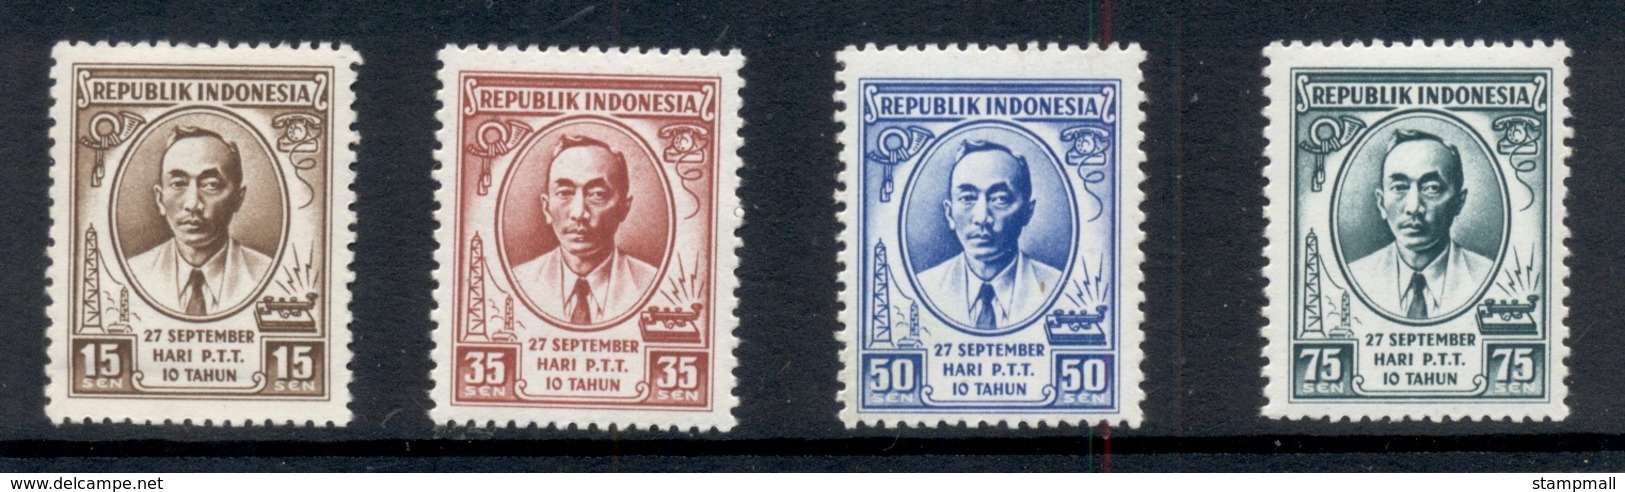 Indonesia 1955 Postal & Telegraph MUH - Indonesia